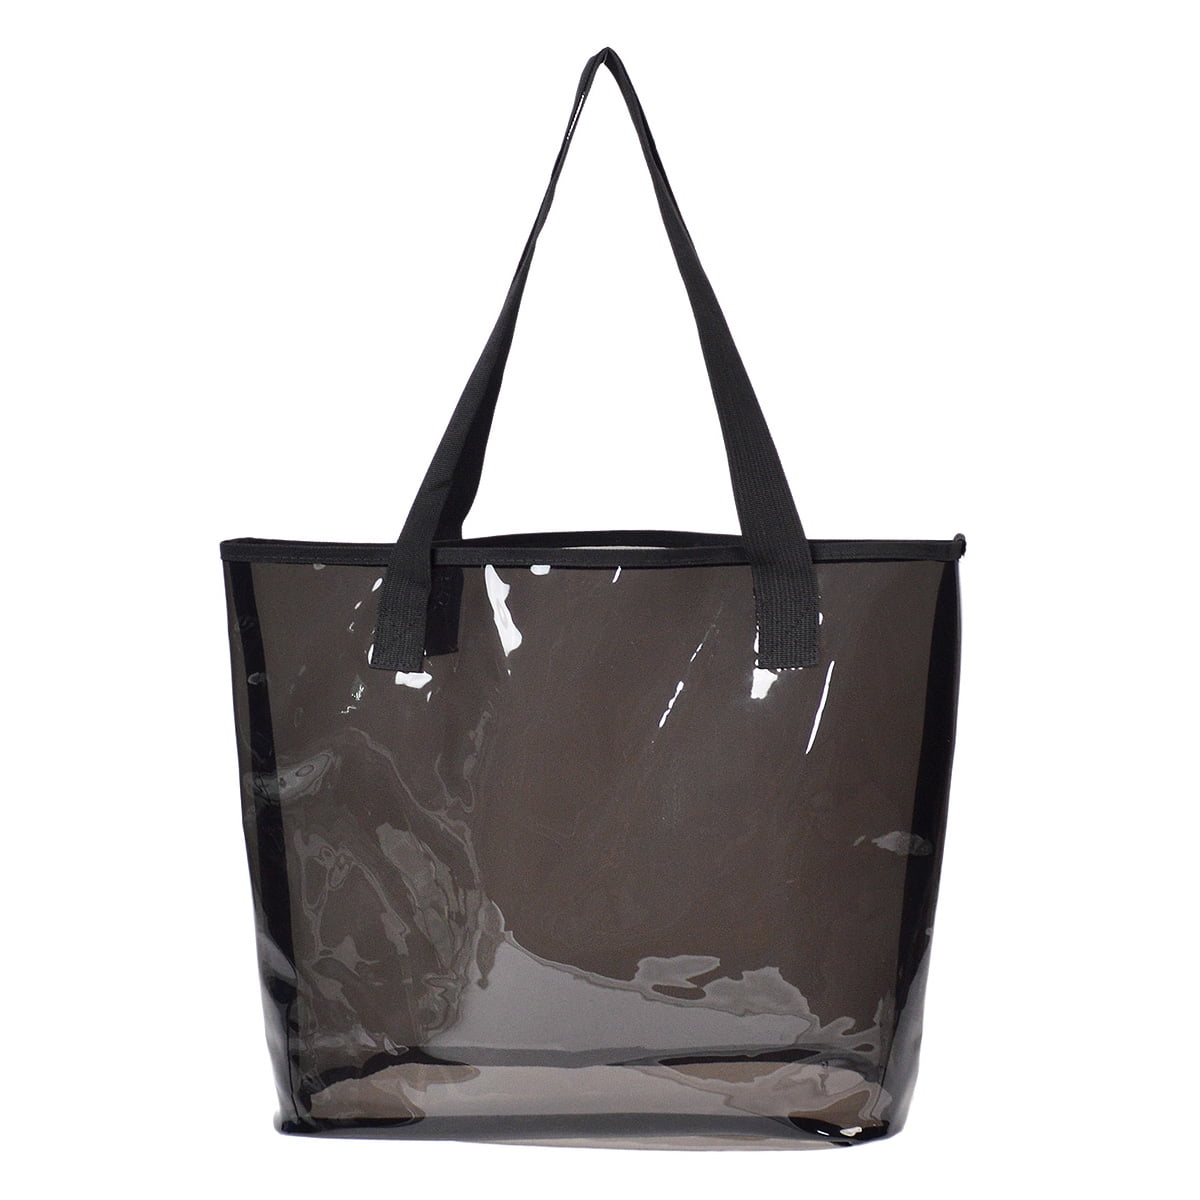 Premium Large Capacity Transparent Clear Tote Bag Shoulder Handbag